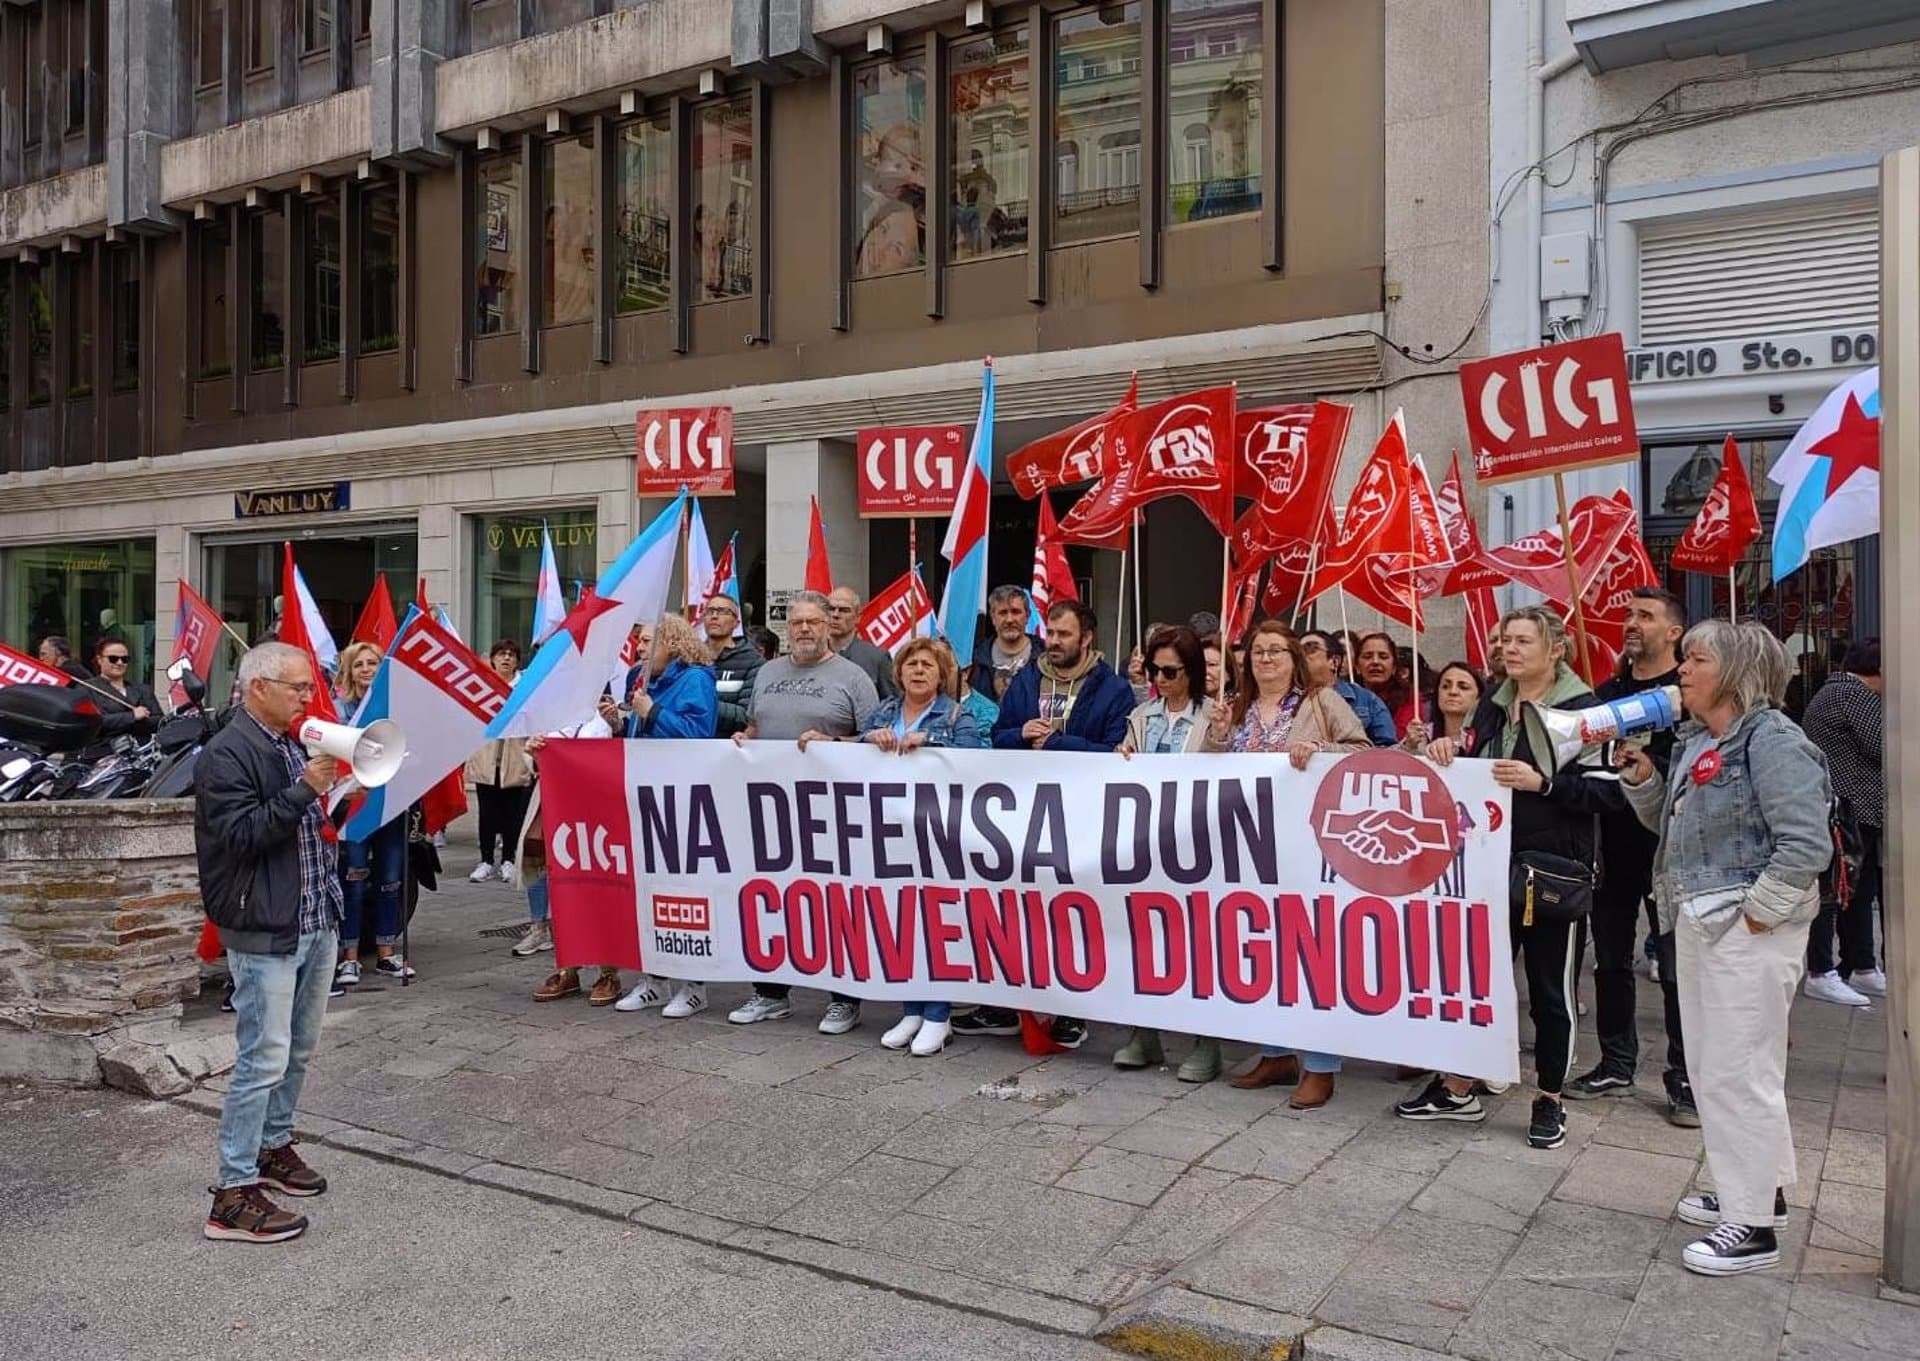 16/05/2023 Trabajadores de limpieza de Lugo protestan por un convenio colectivo "digno".
ECONOMIA
CIG